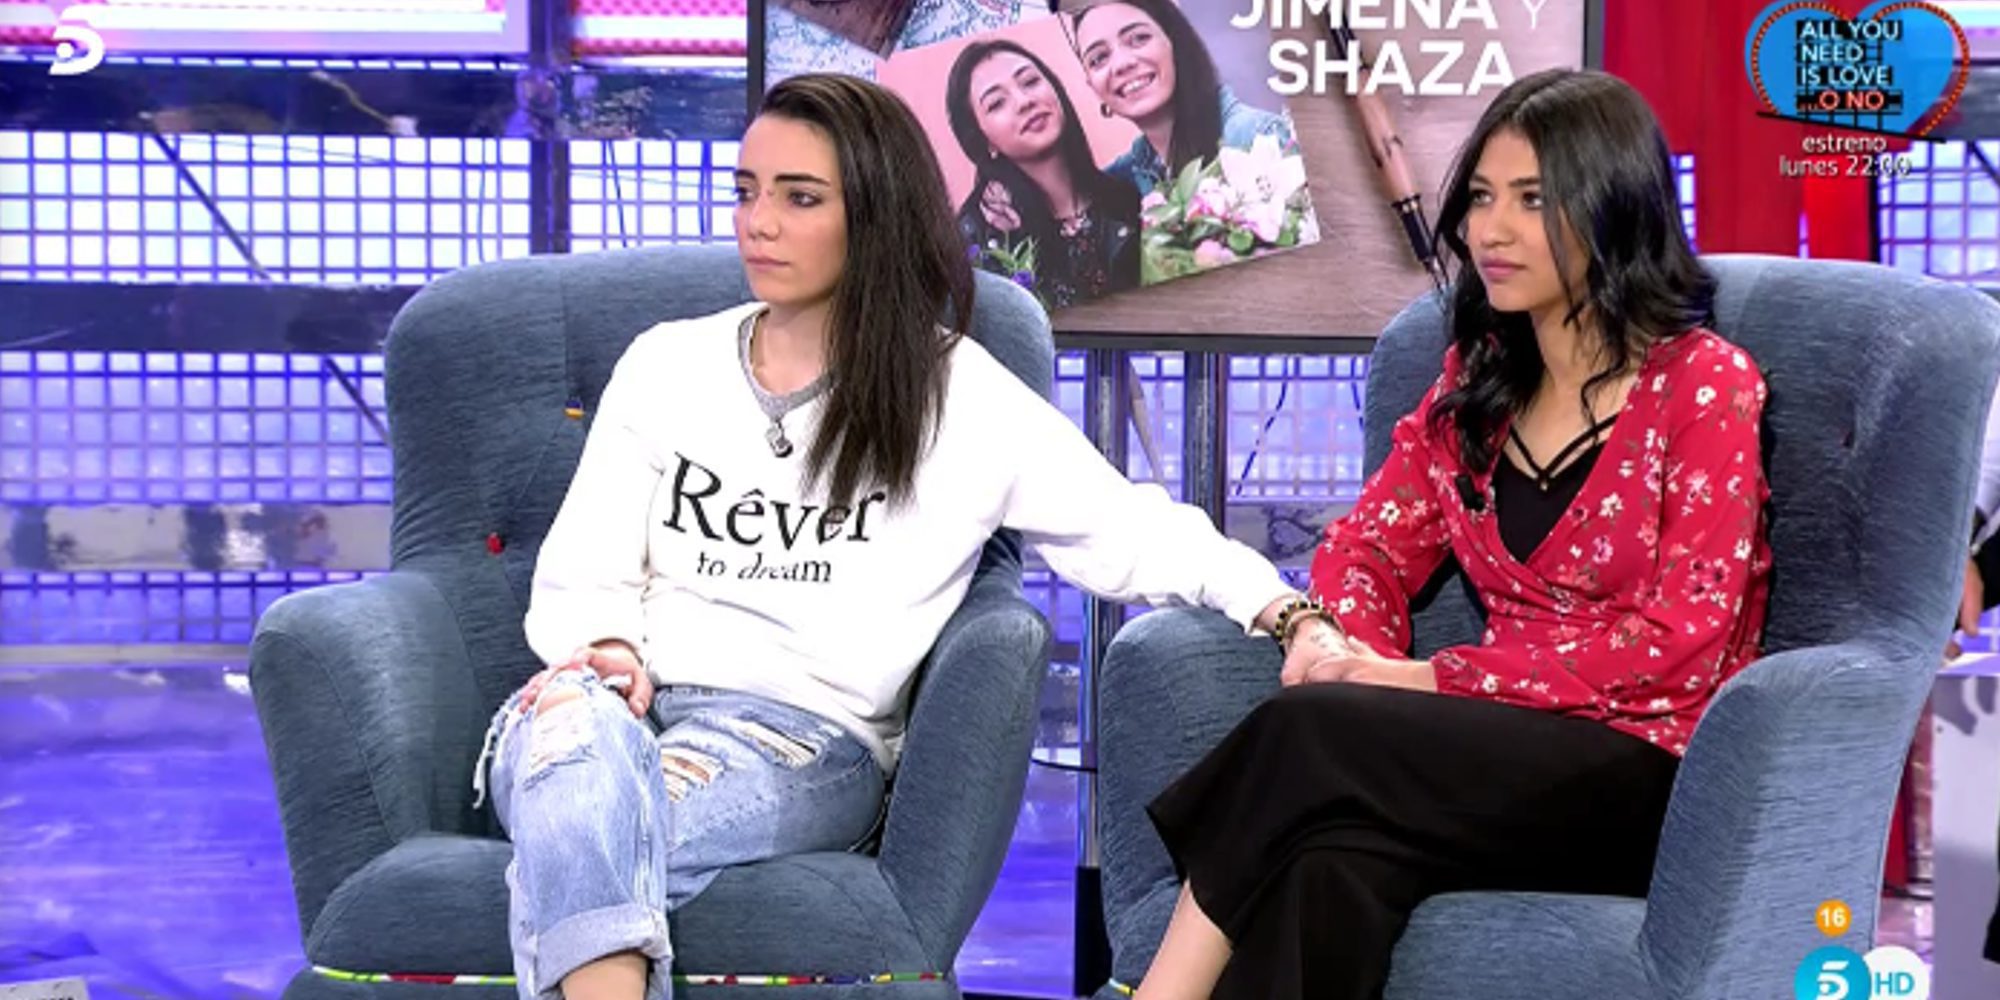 Shaza y su complicada situación: "En una comunidad árabe estoy en peligro porque soy lesbiana"